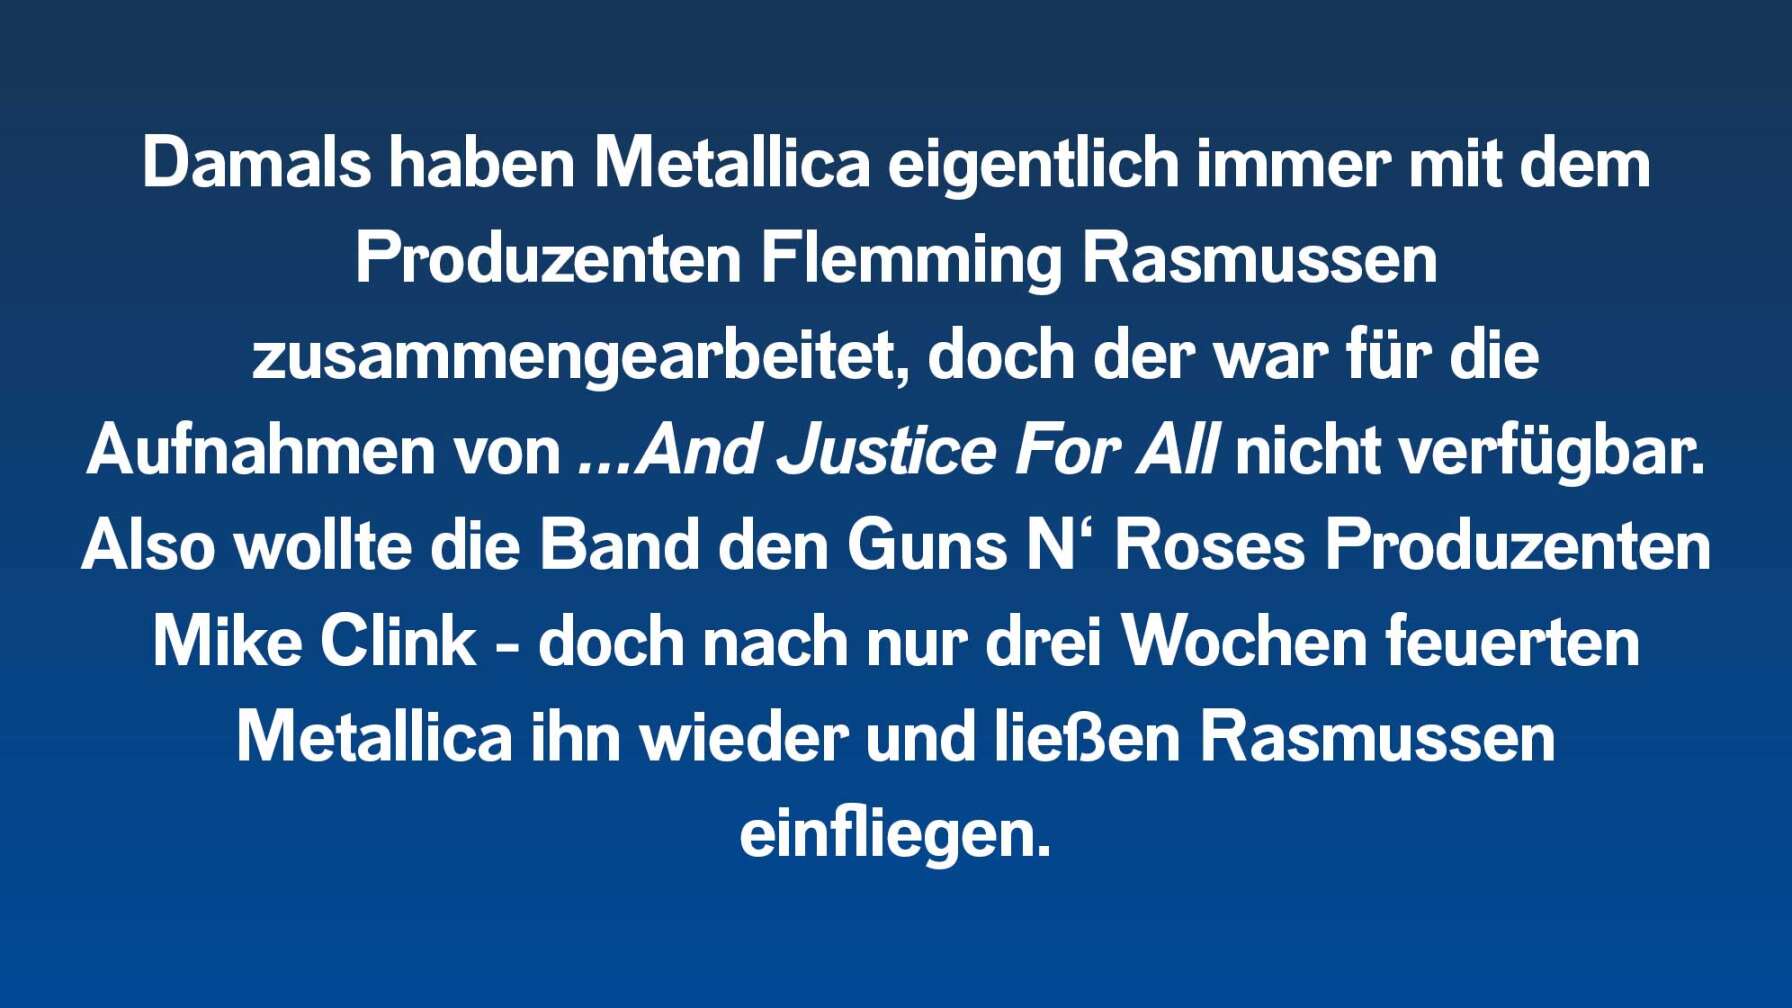 Damals haben Metallica eigentlich immer mit dem Produzenten Flemming Rasmussen zusammengearbeitet, doch der war für die Aufnahmen von …And Justice For All nicht verfügbar. Also wollte die Band den Guns N‘ Roses Produzenten Mike Clink – doch nach nur drei Wochen feuerten Metallica ihn wieder und ließen Rasmussen wieder einfliegen.